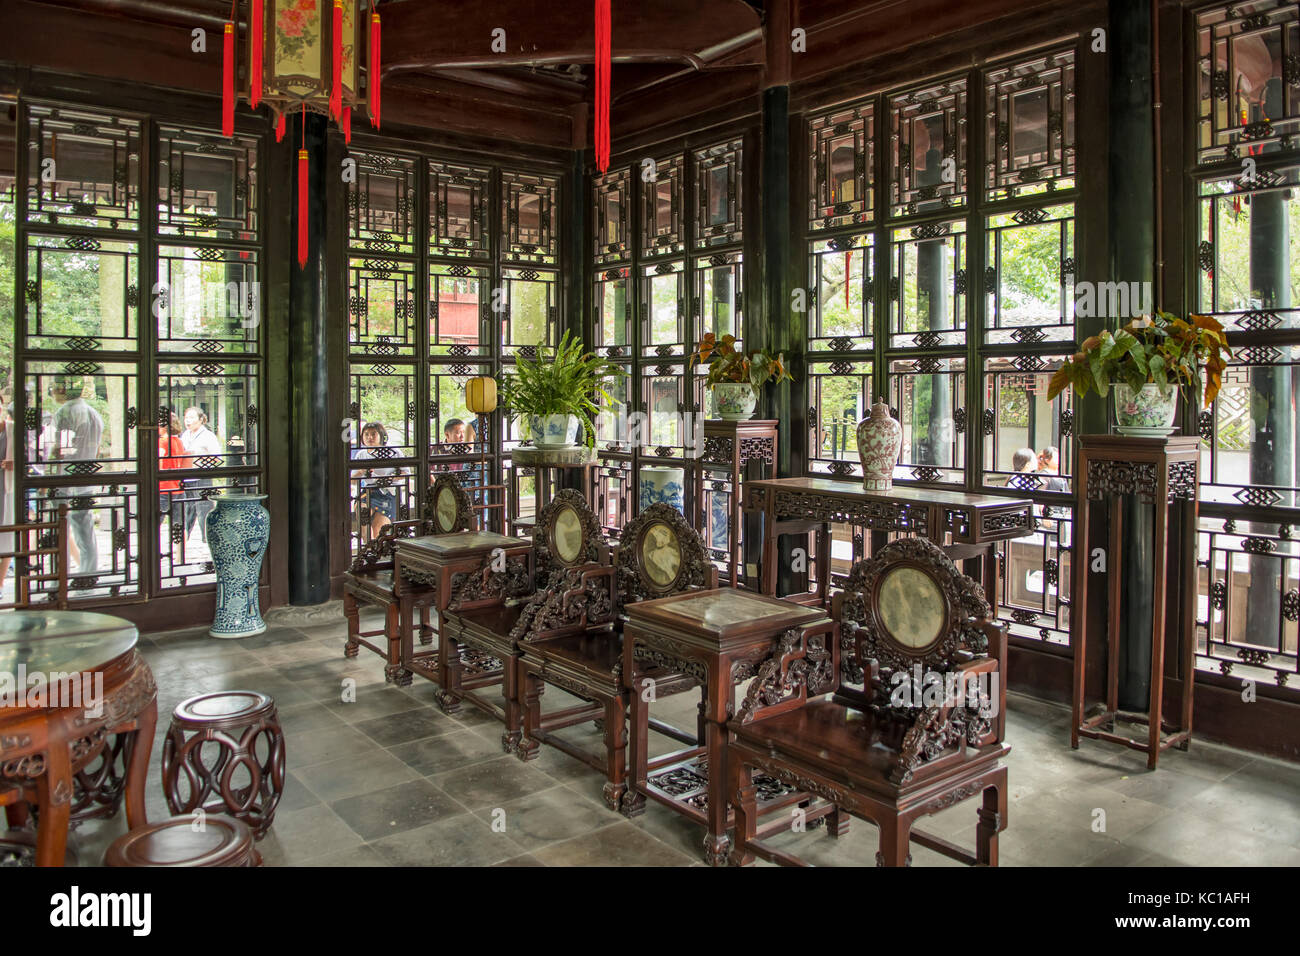 Halle weit entfernter Duft, die demütige administrator Garten, Suzhou, China Stockfoto